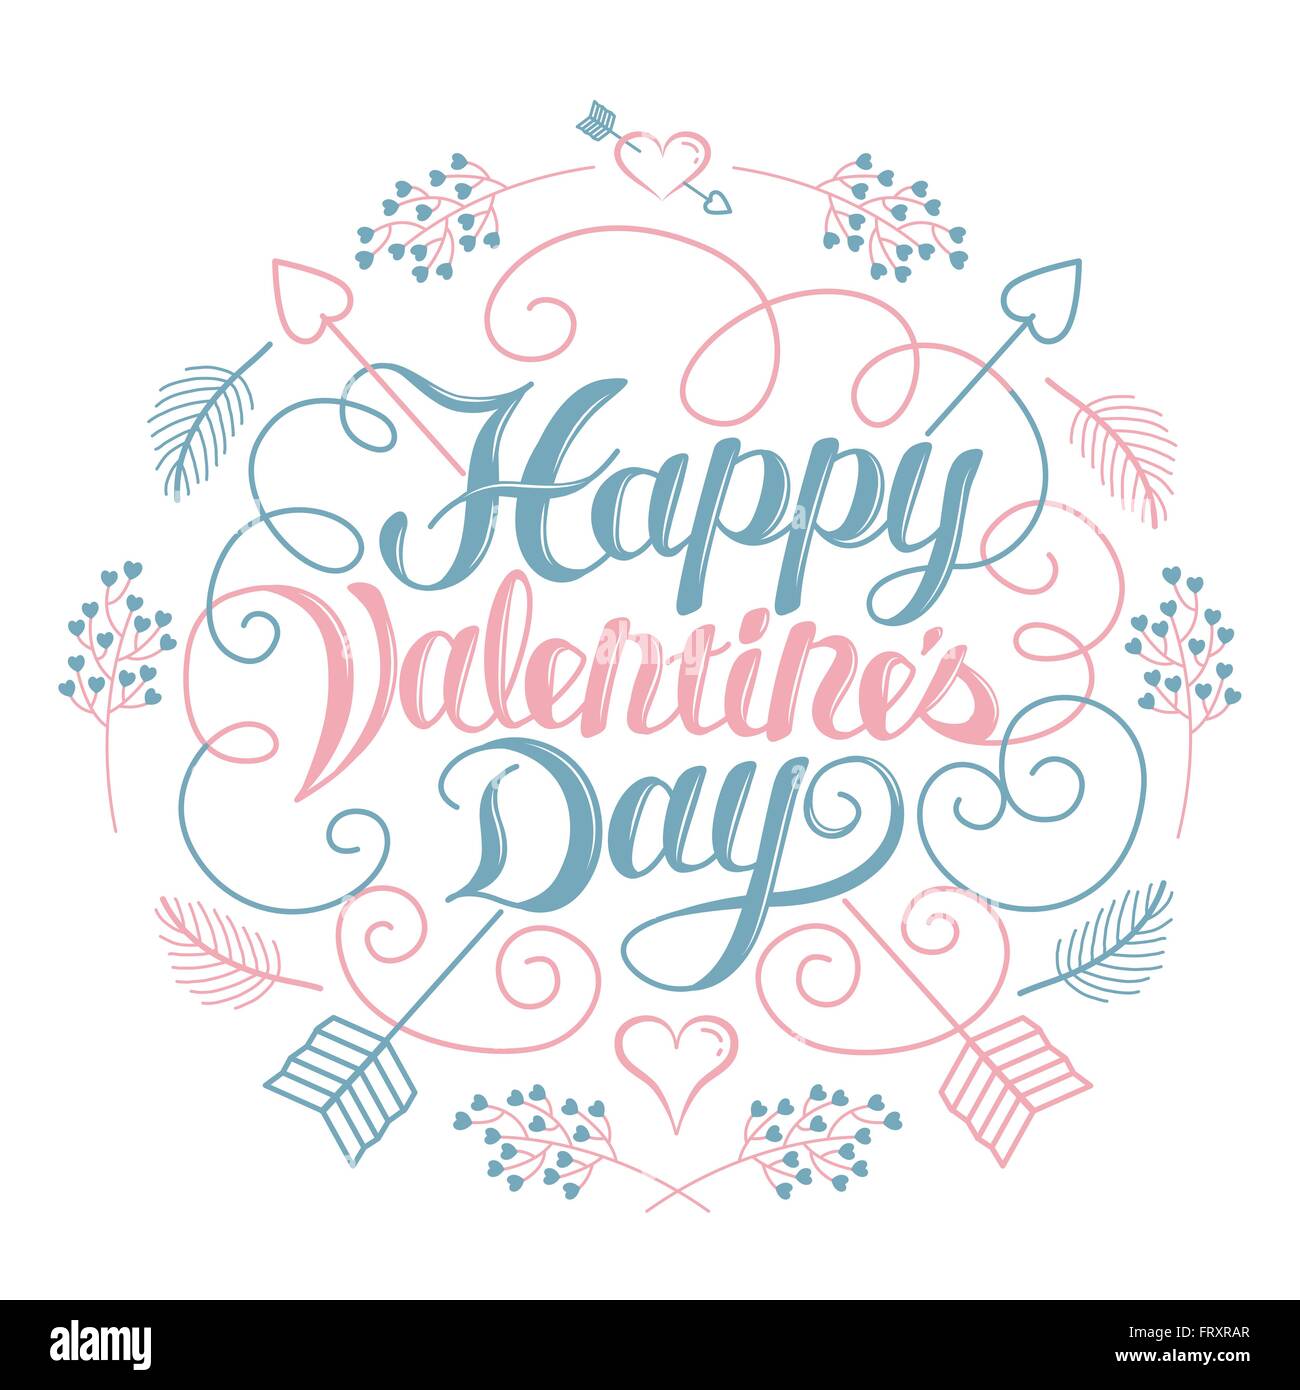 Happy Valentine's day élégant affiche calligraphie Illustration de Vecteur